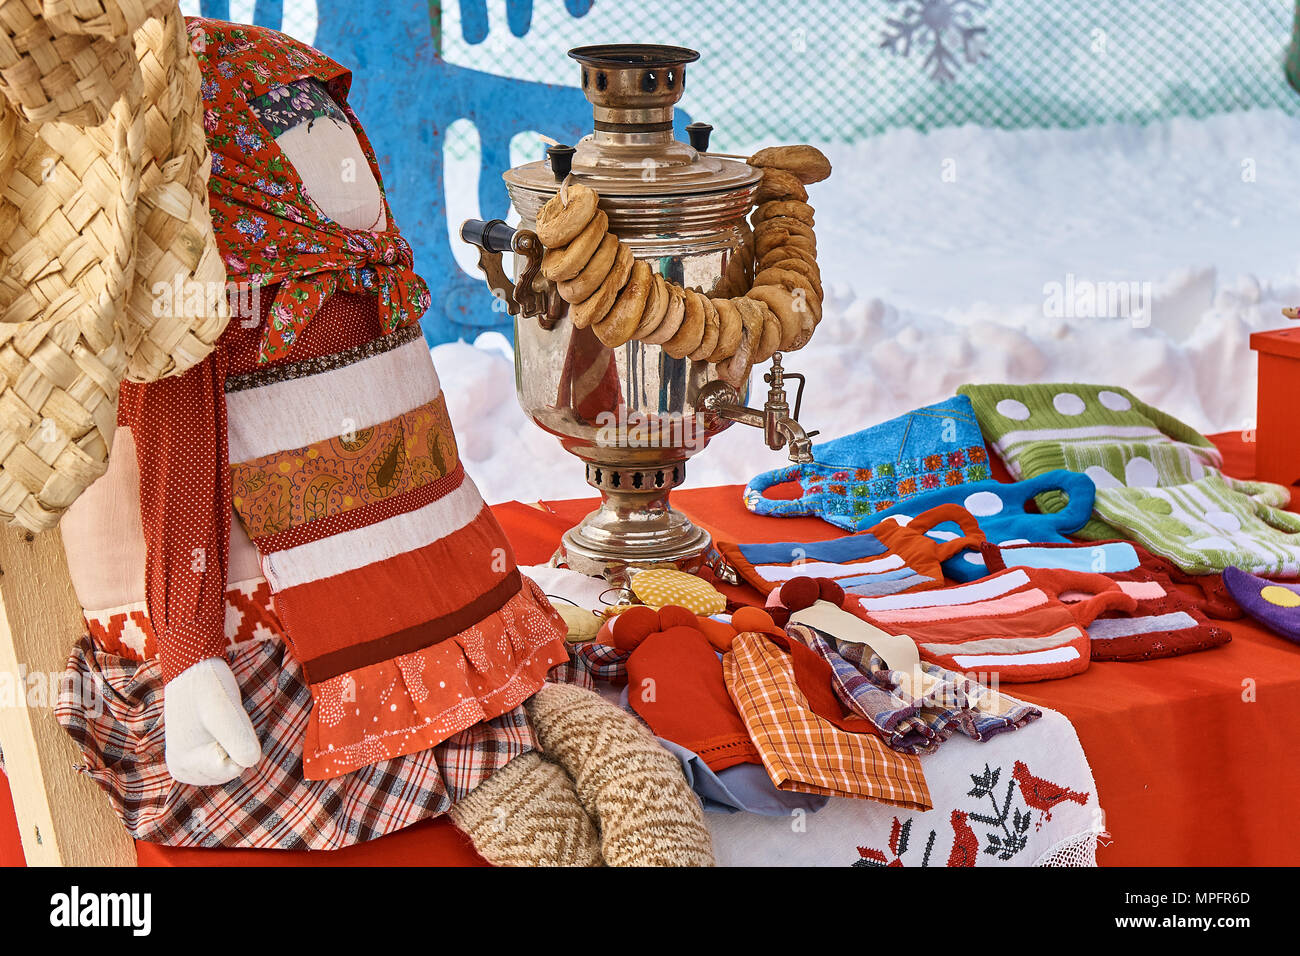 Samovar avec bagels placés près des décorations russes traditionnelles sur la table pendant la foire le jour d'hiver Banque D'Images